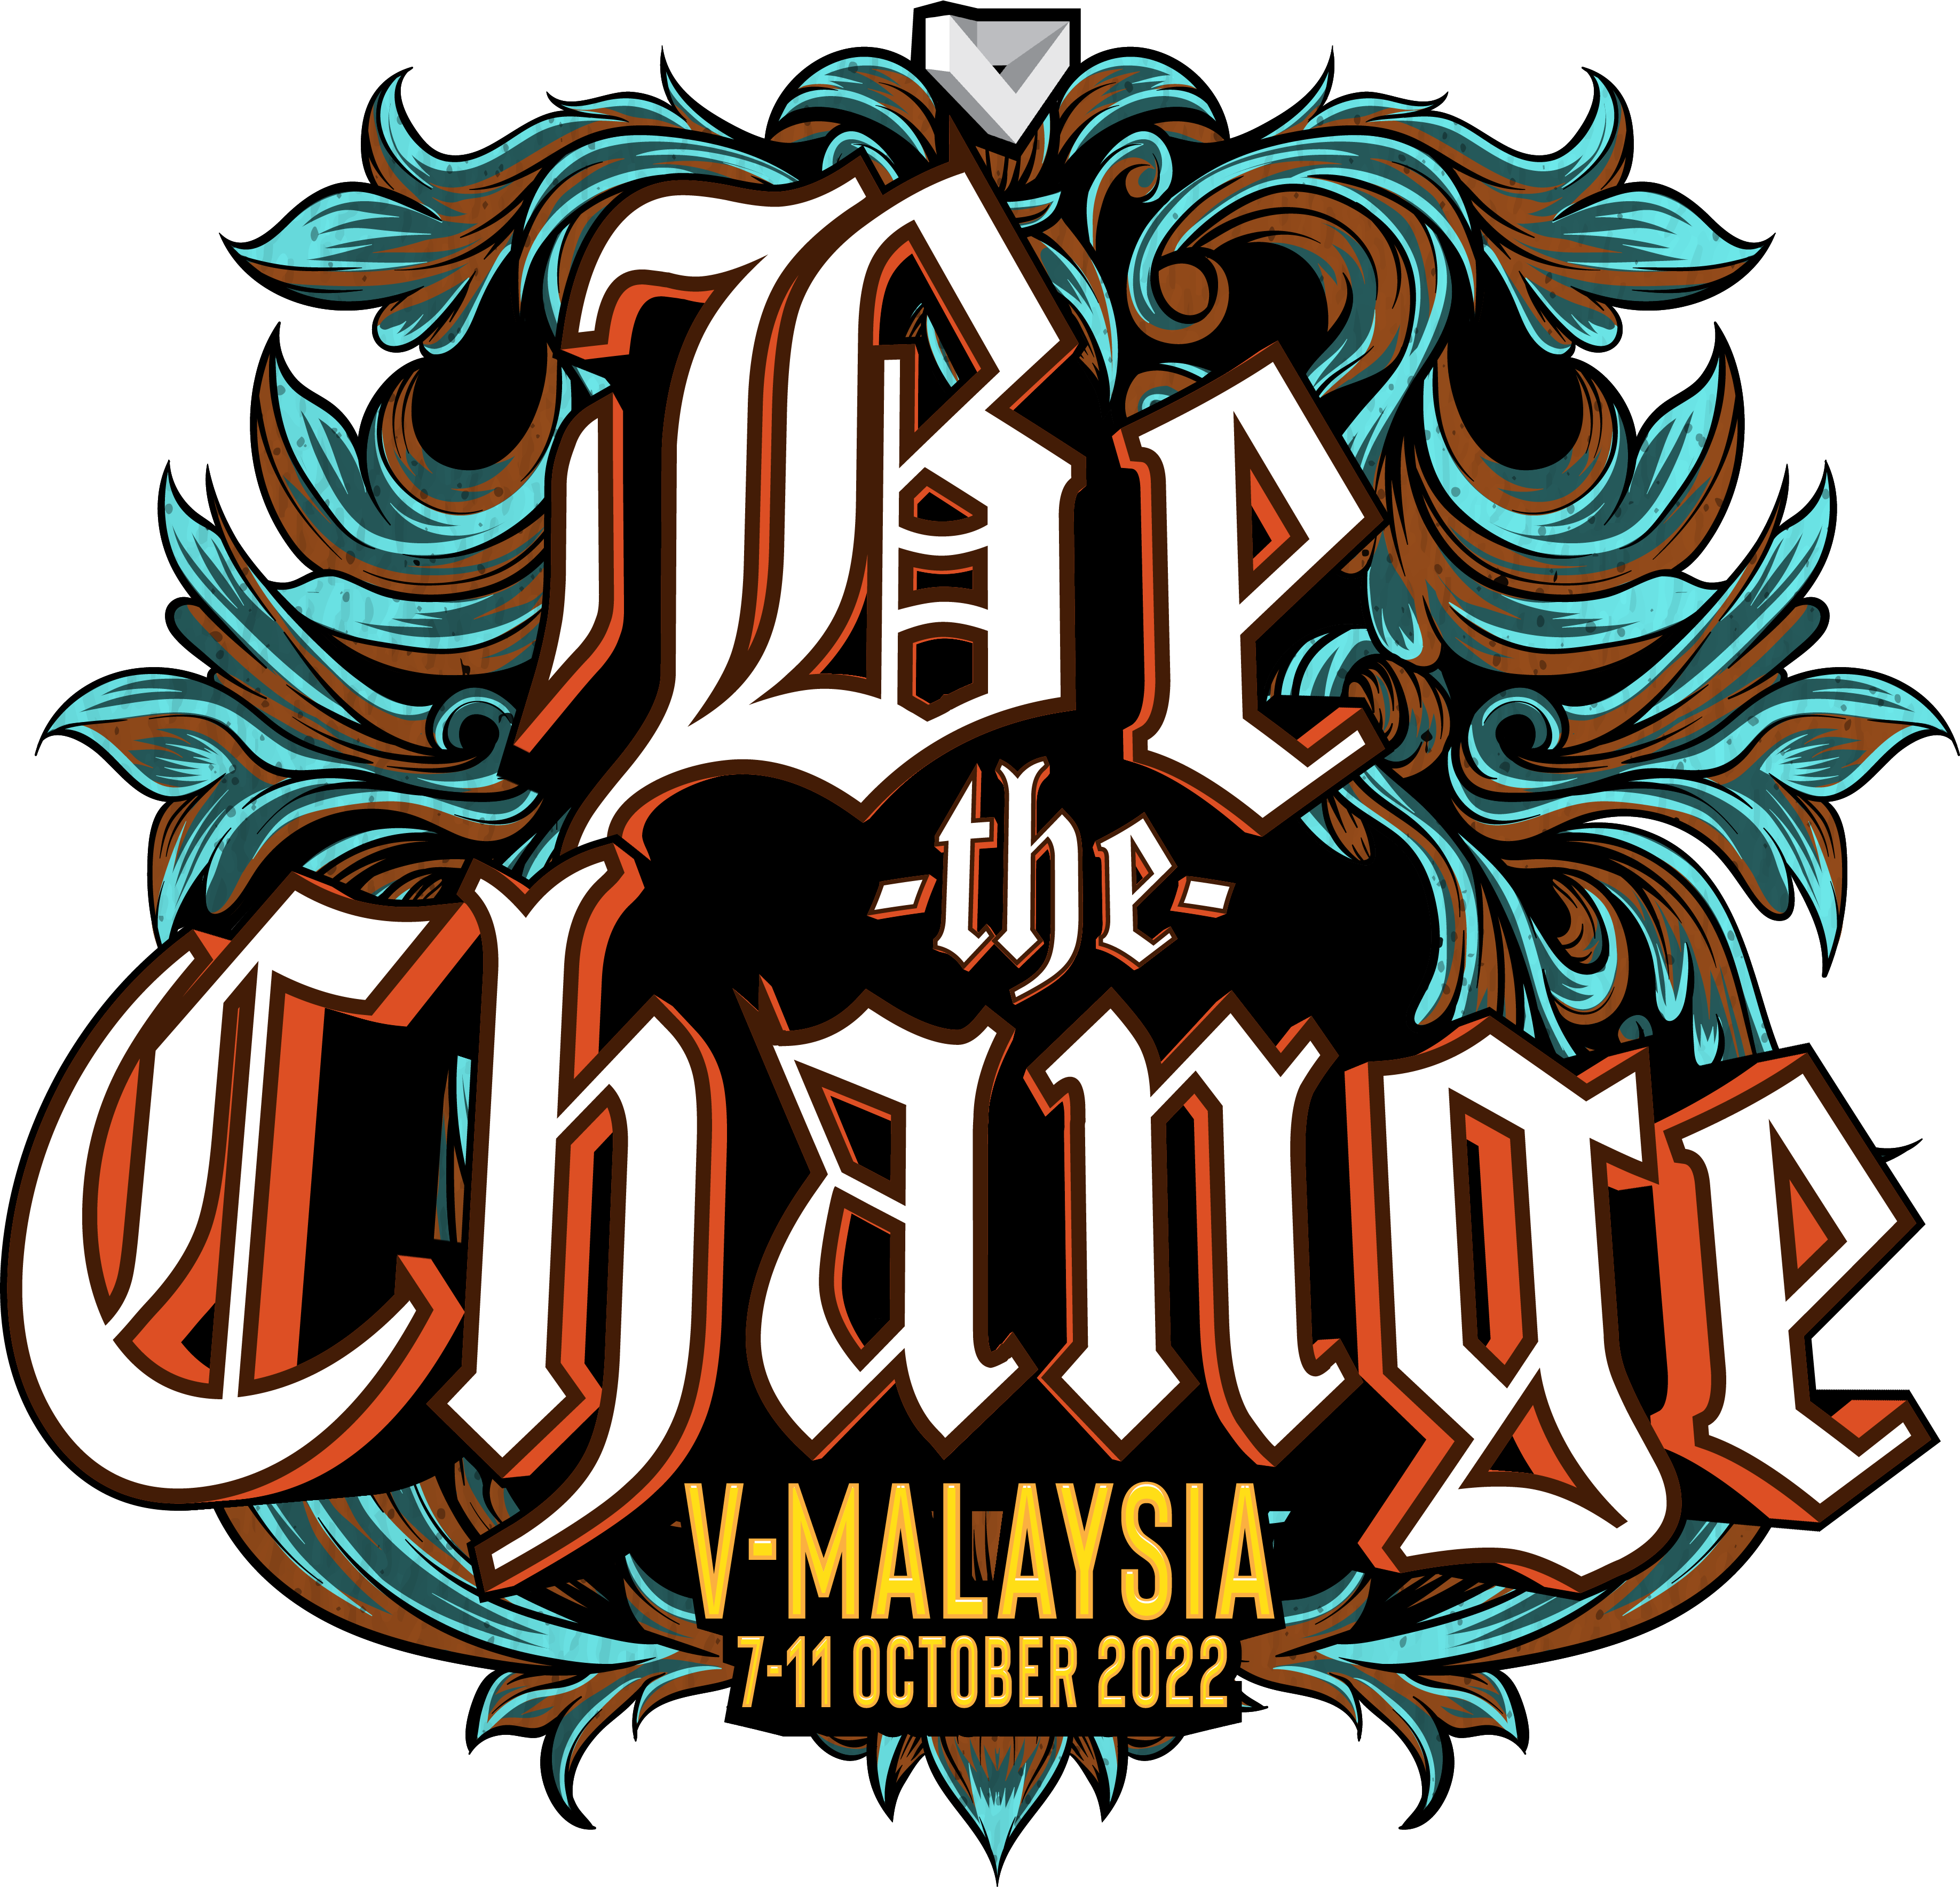 V-Malaysia 2022